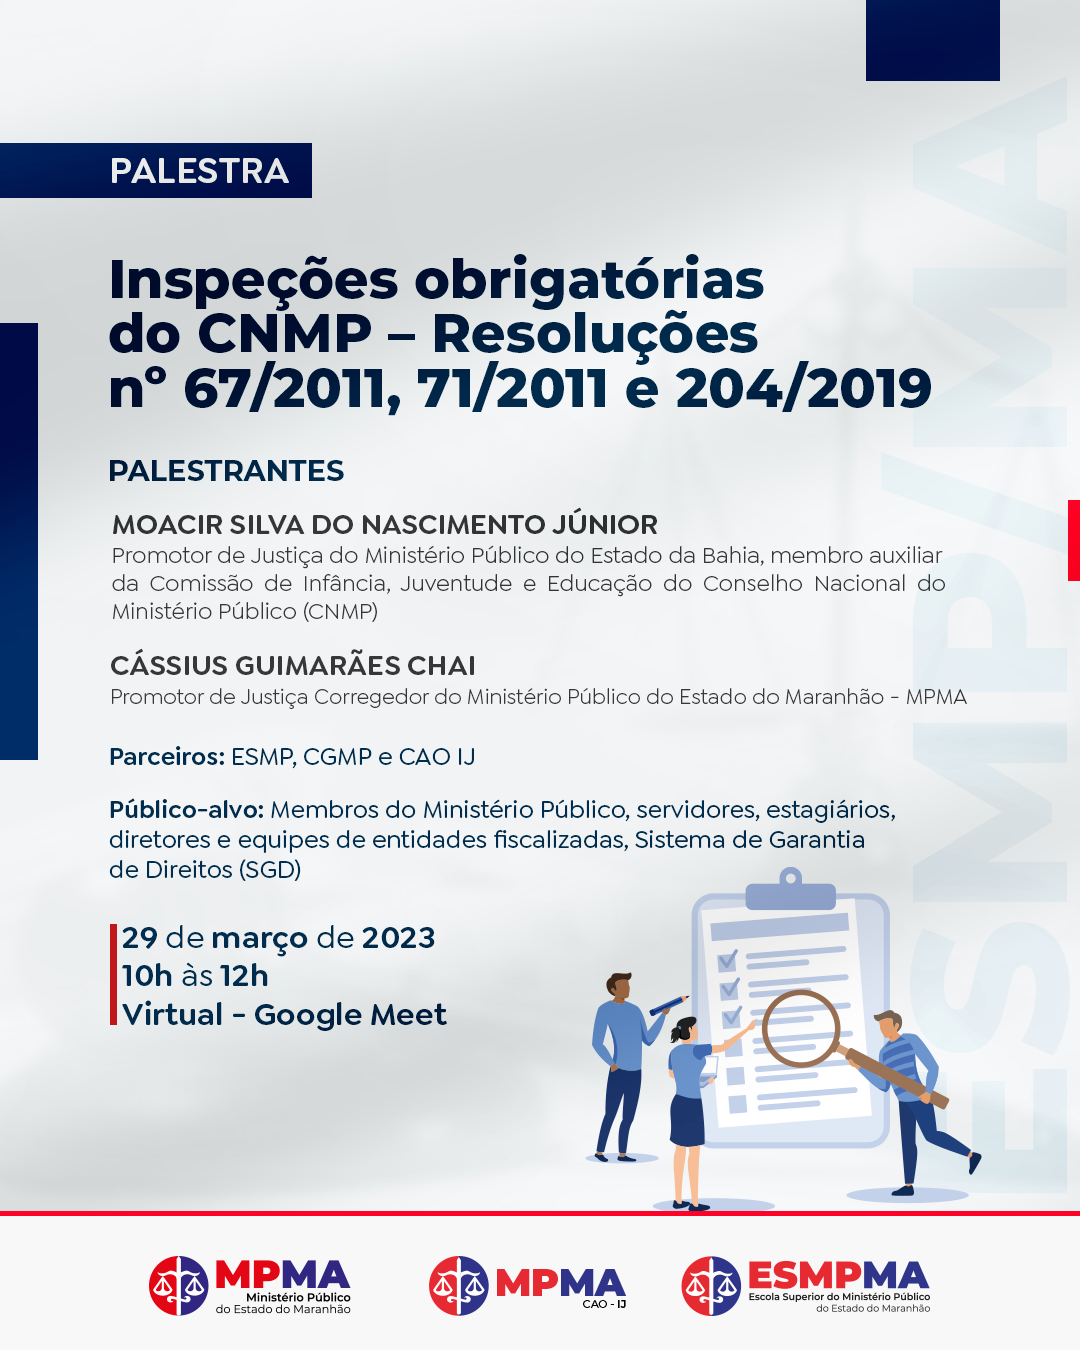 Palestra "Inspeções Obrigatórias do CNMP – Resoluções nº 67/2011, 71/2011 e 204/2019"